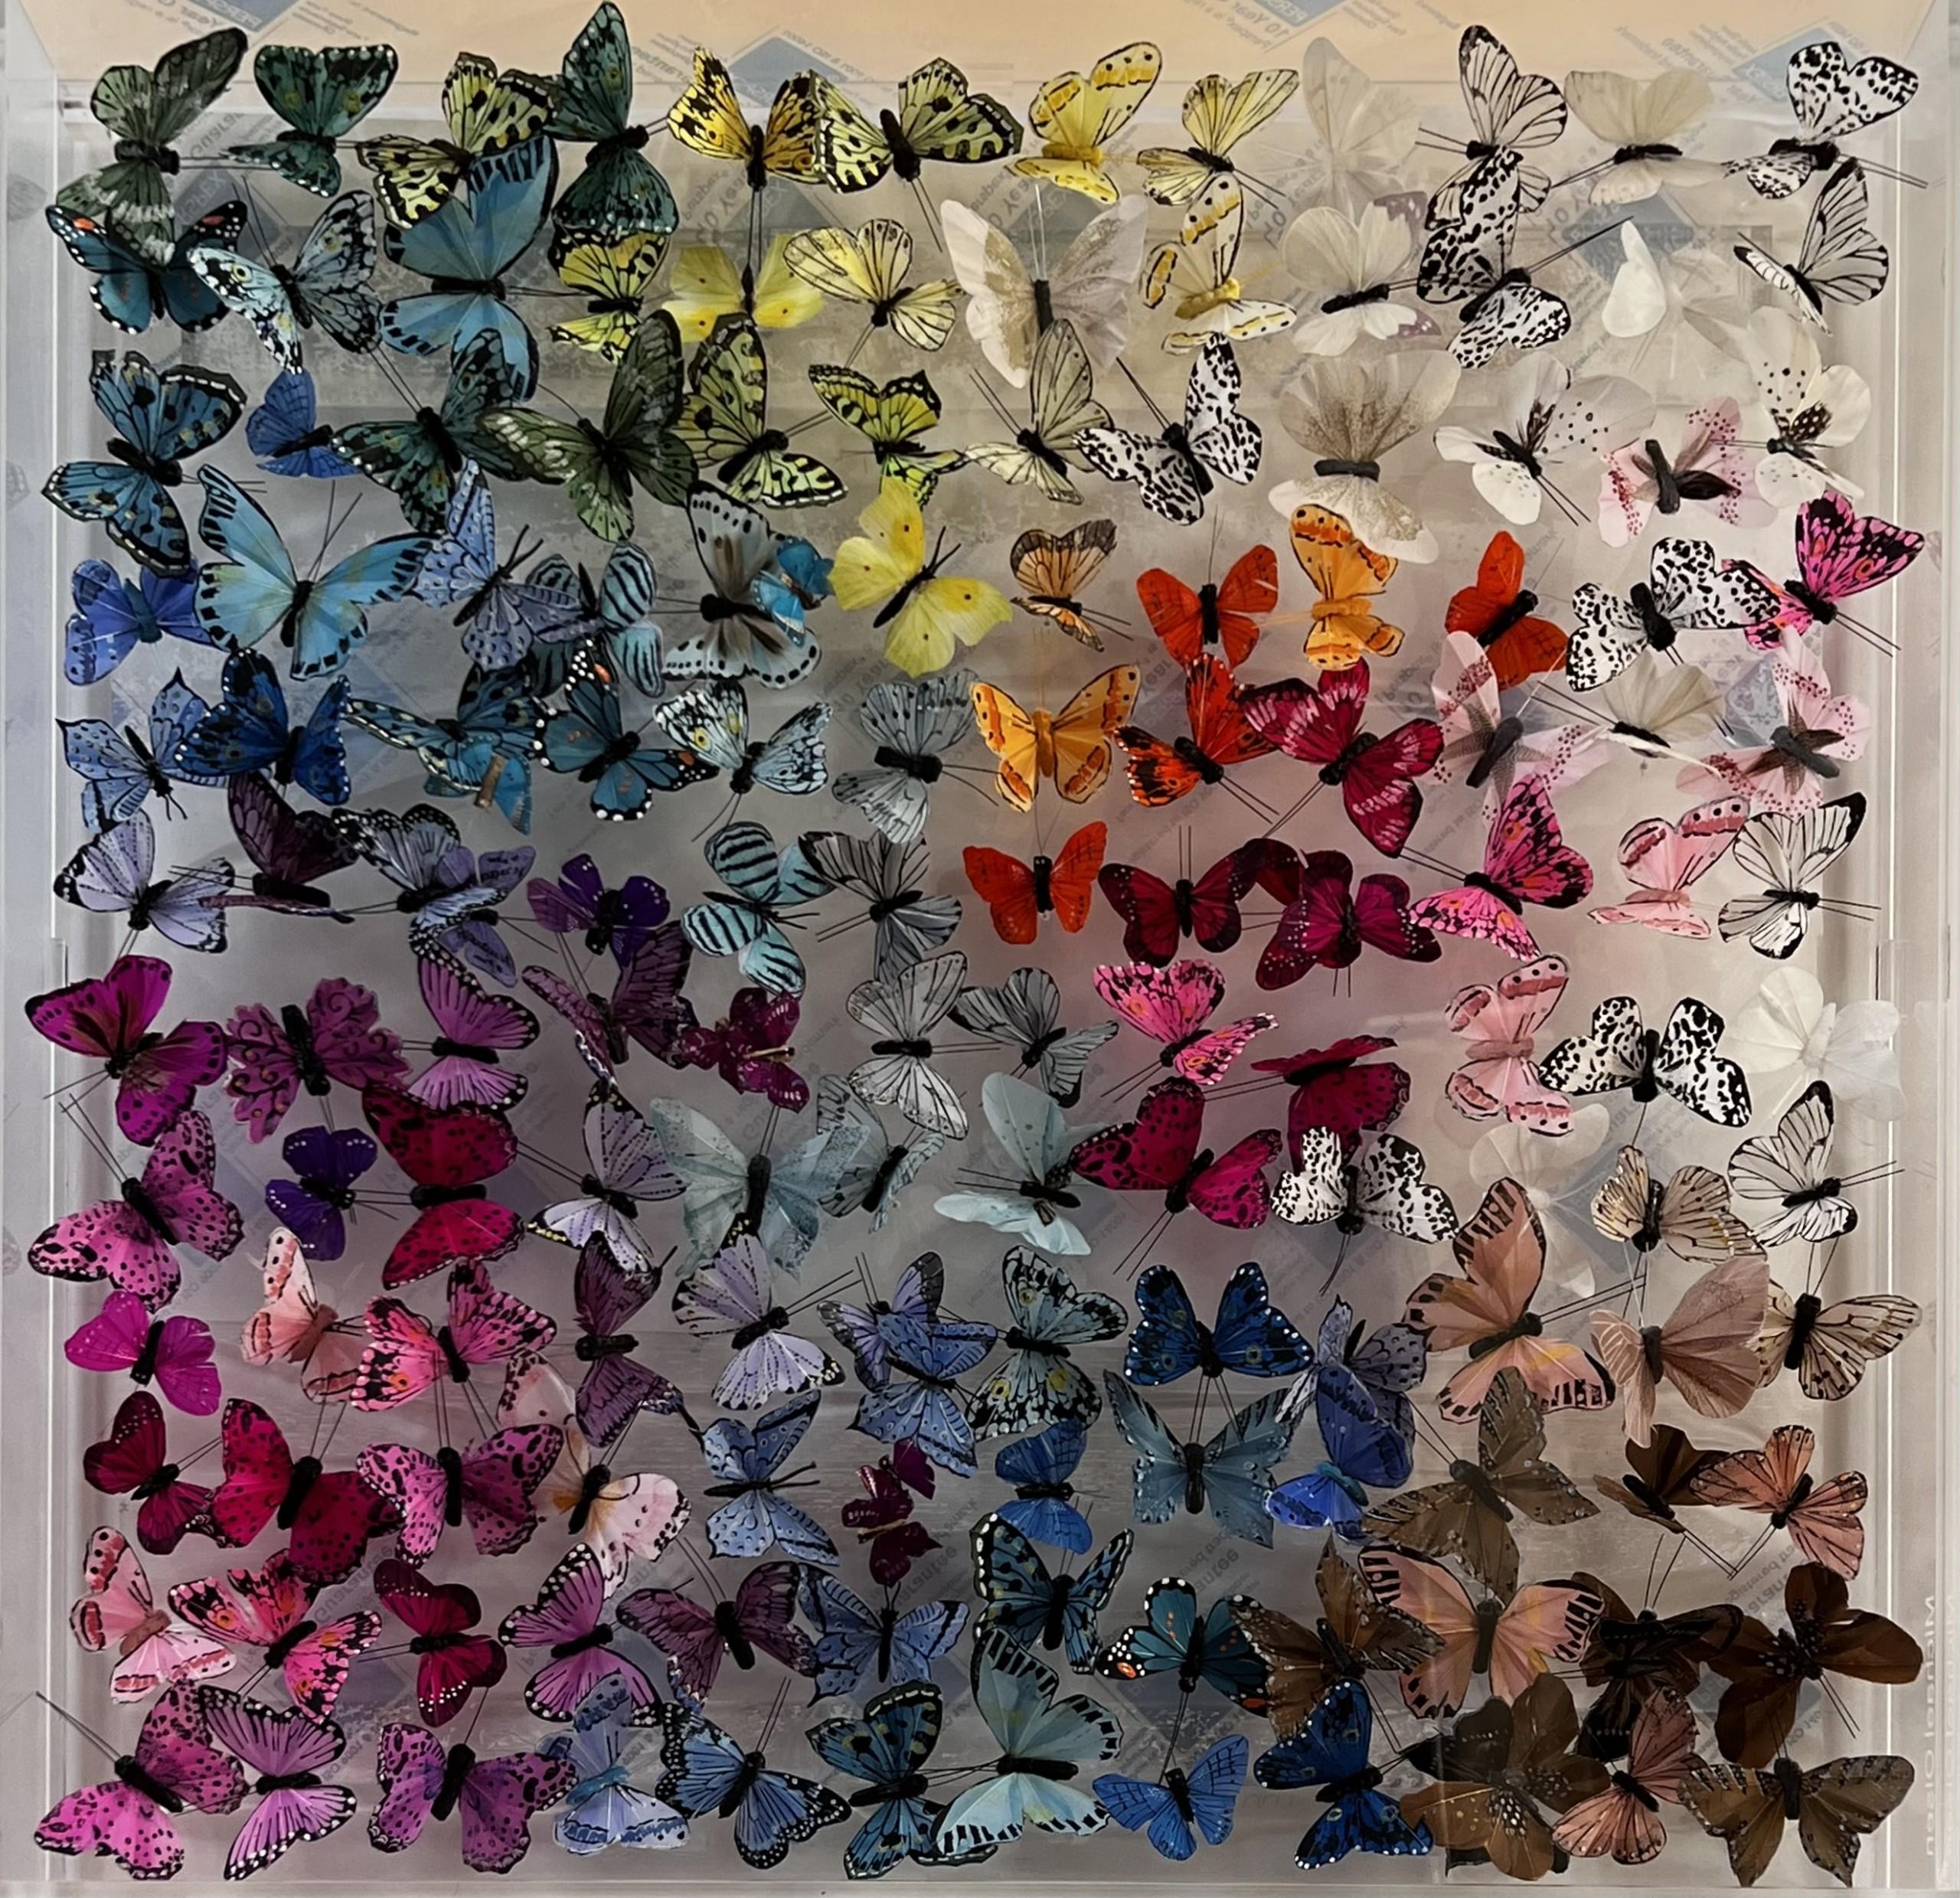 Wychwood White, Schmetterling Kunstwerk, 3D Contemporary Perspex Art, Statement Art – Mixed Media Art von Michael Olsen